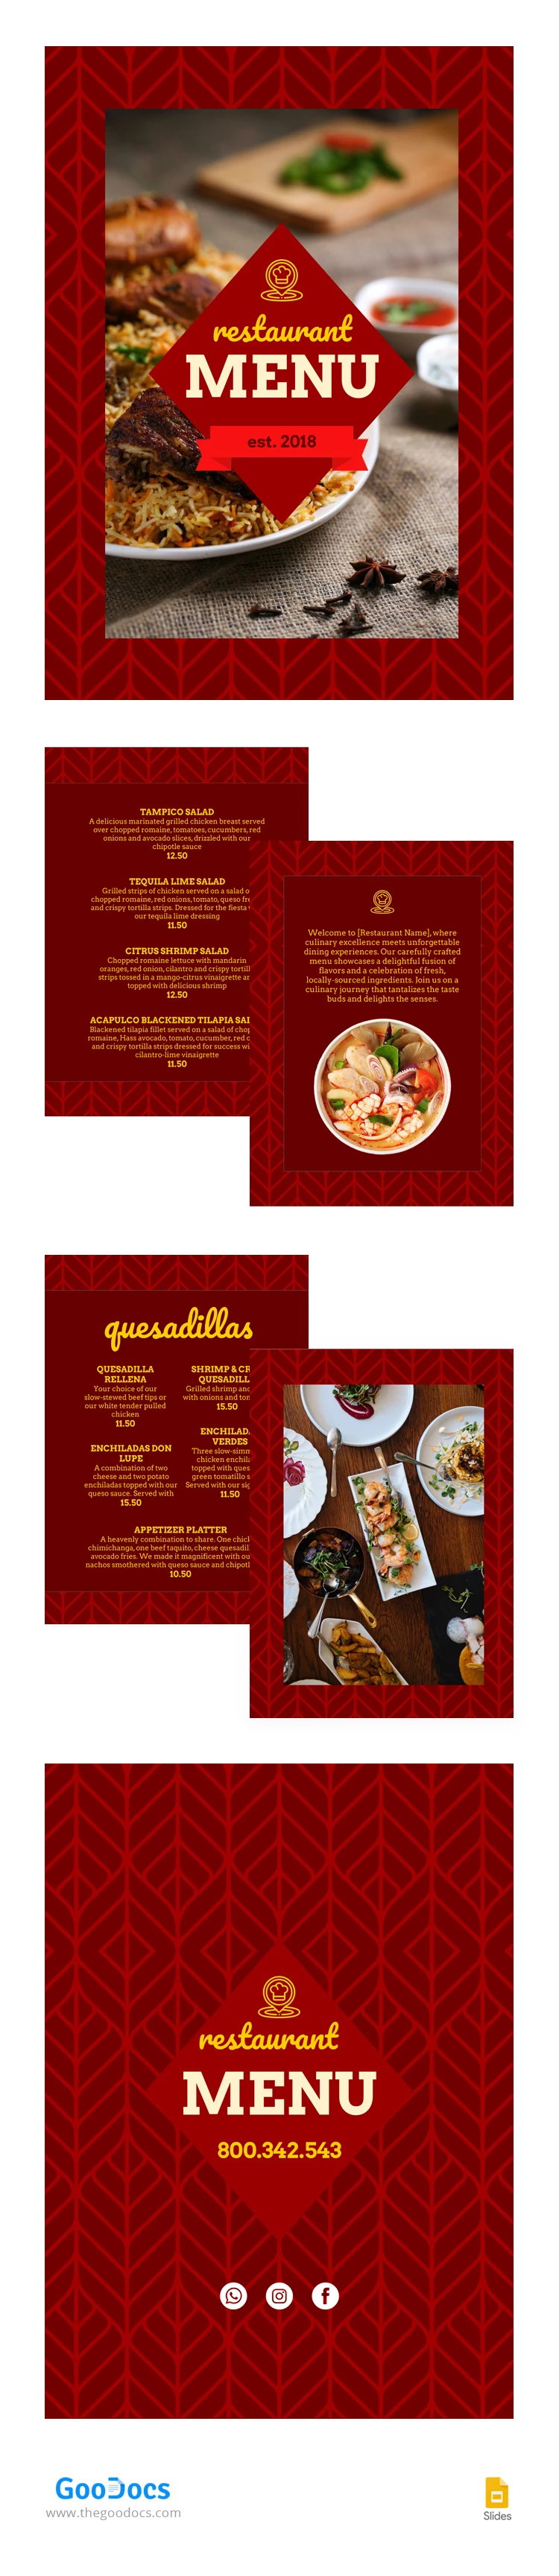 Menu do Café do Restaurante - free Google Docs Template - 10066606